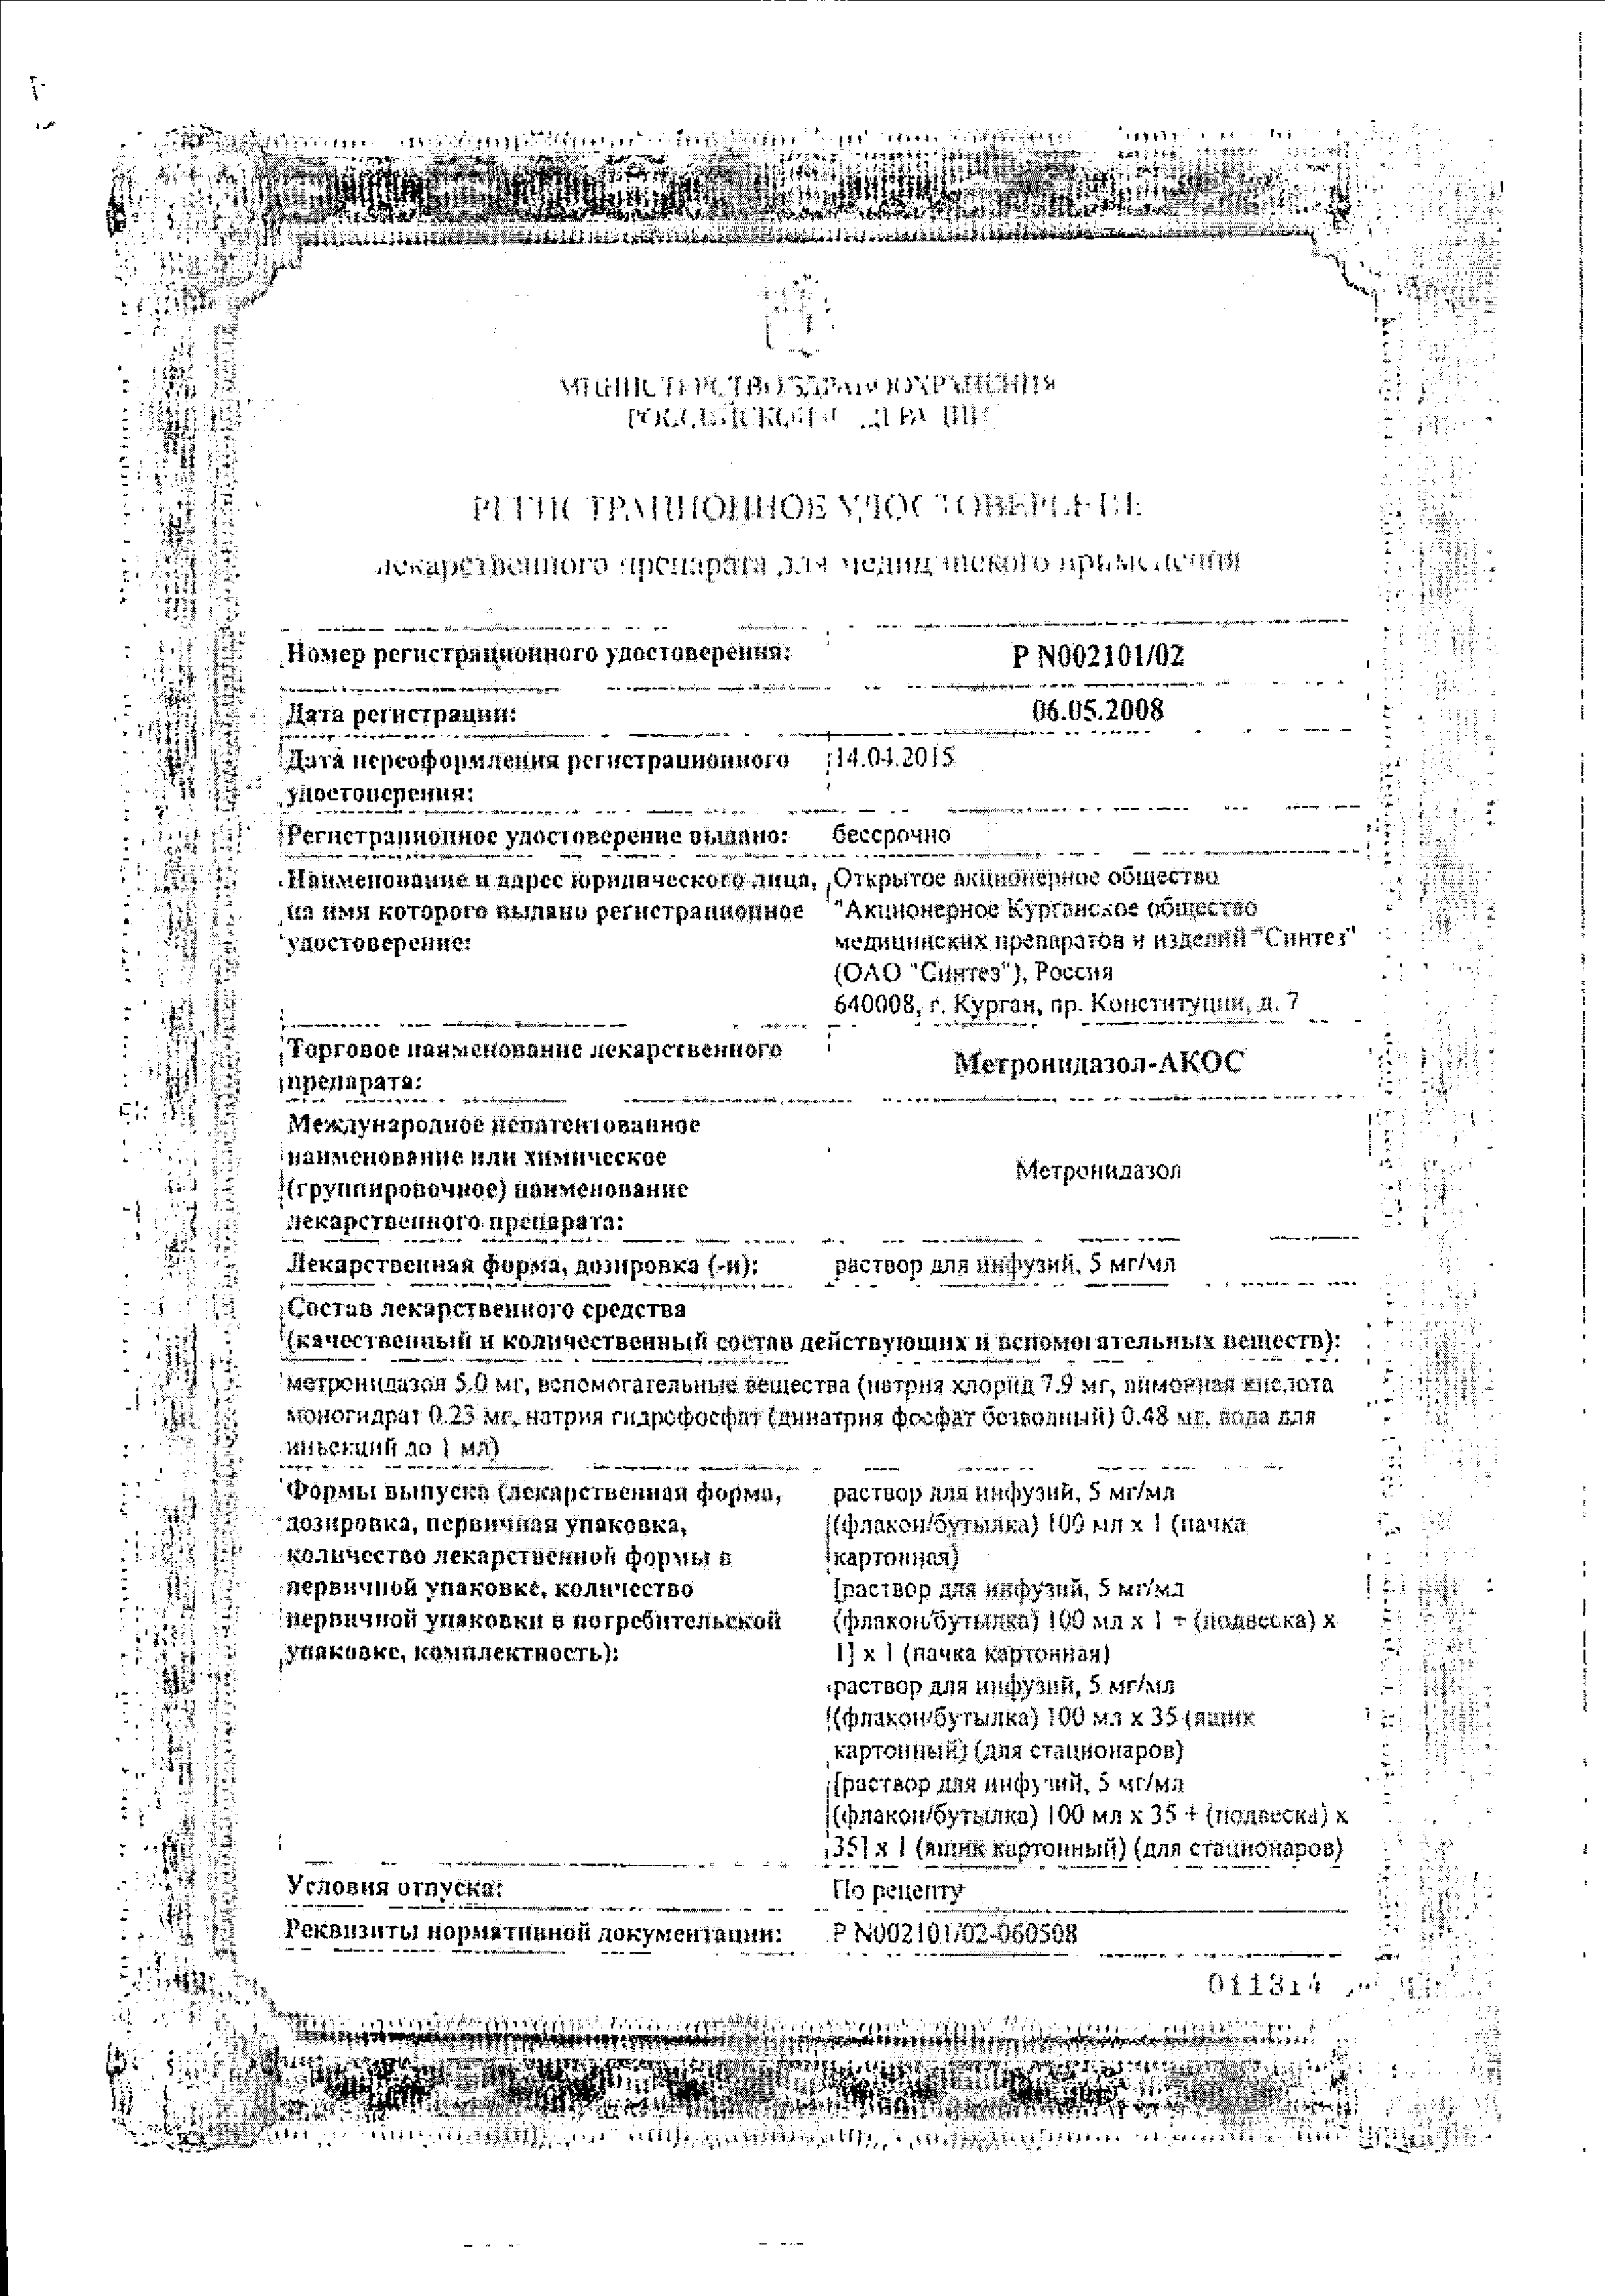 Метронидазол-АКОС сертификат